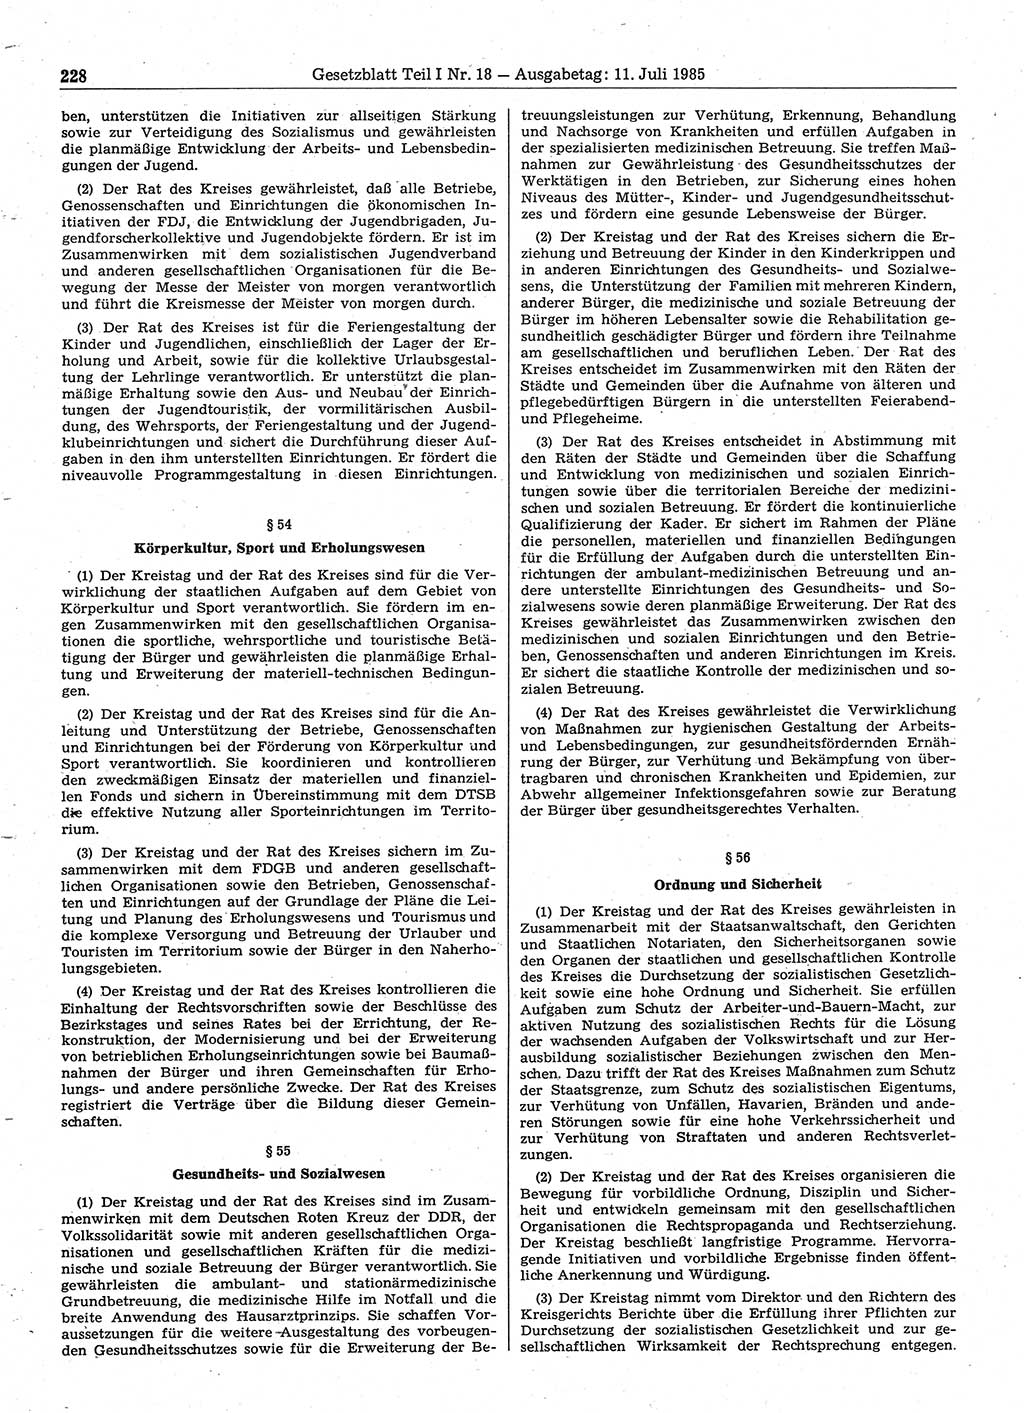 Gesetzblatt (GBl.) der Deutschen Demokratischen Republik (DDR) Teil Ⅰ 1985, Seite 228 (GBl. DDR Ⅰ 1985, S. 228)